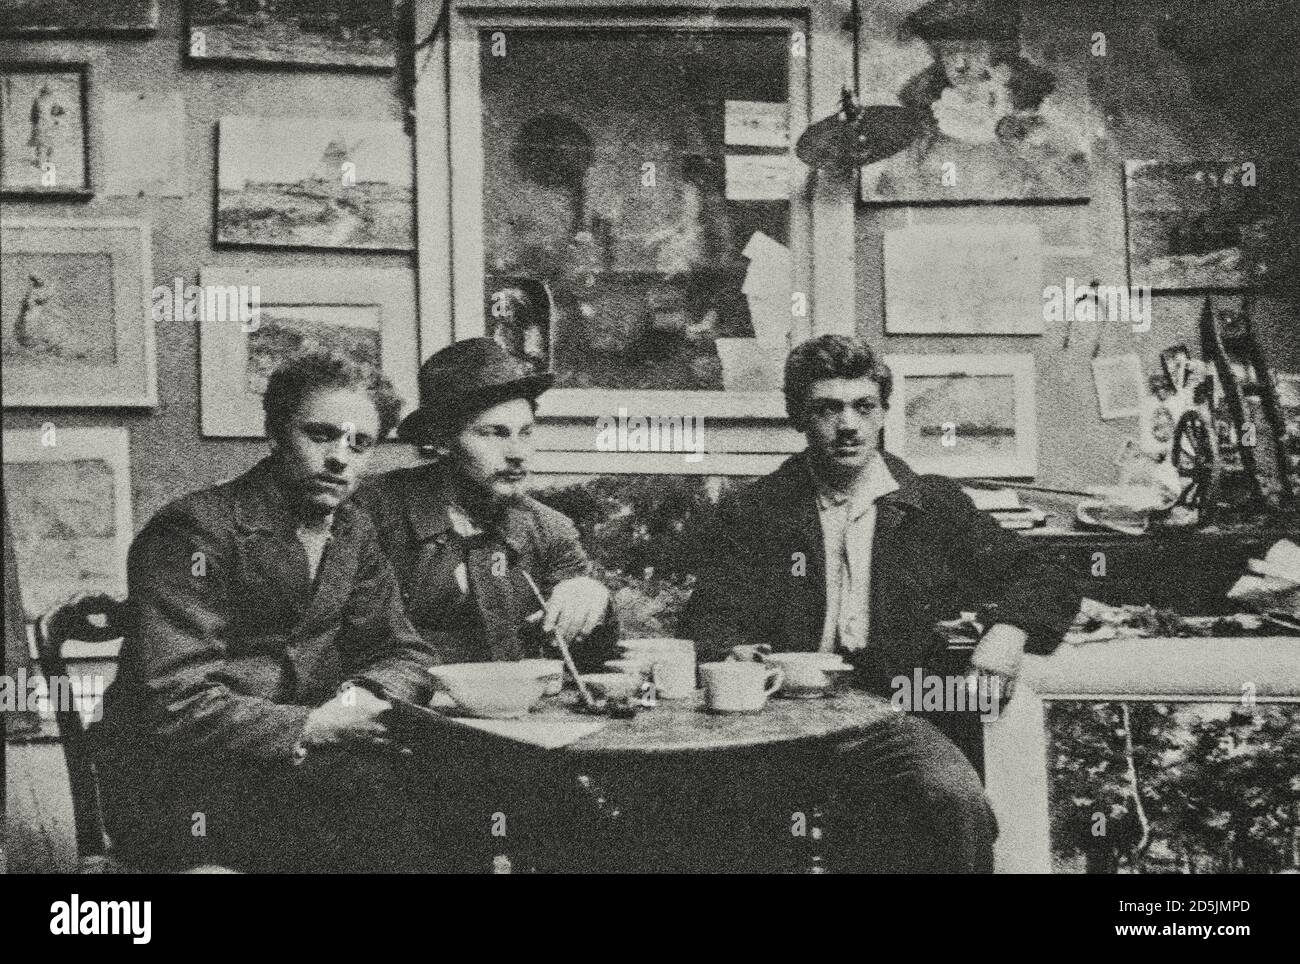 Retro-Foto von Raoul Dufy (links) und Othon Friesz (rechts) in ihrem Studio. 1900 Raoul Dufy (1877 – 1953) war ein französischer Fauvistmaler, Bruder von Jean Stockfoto